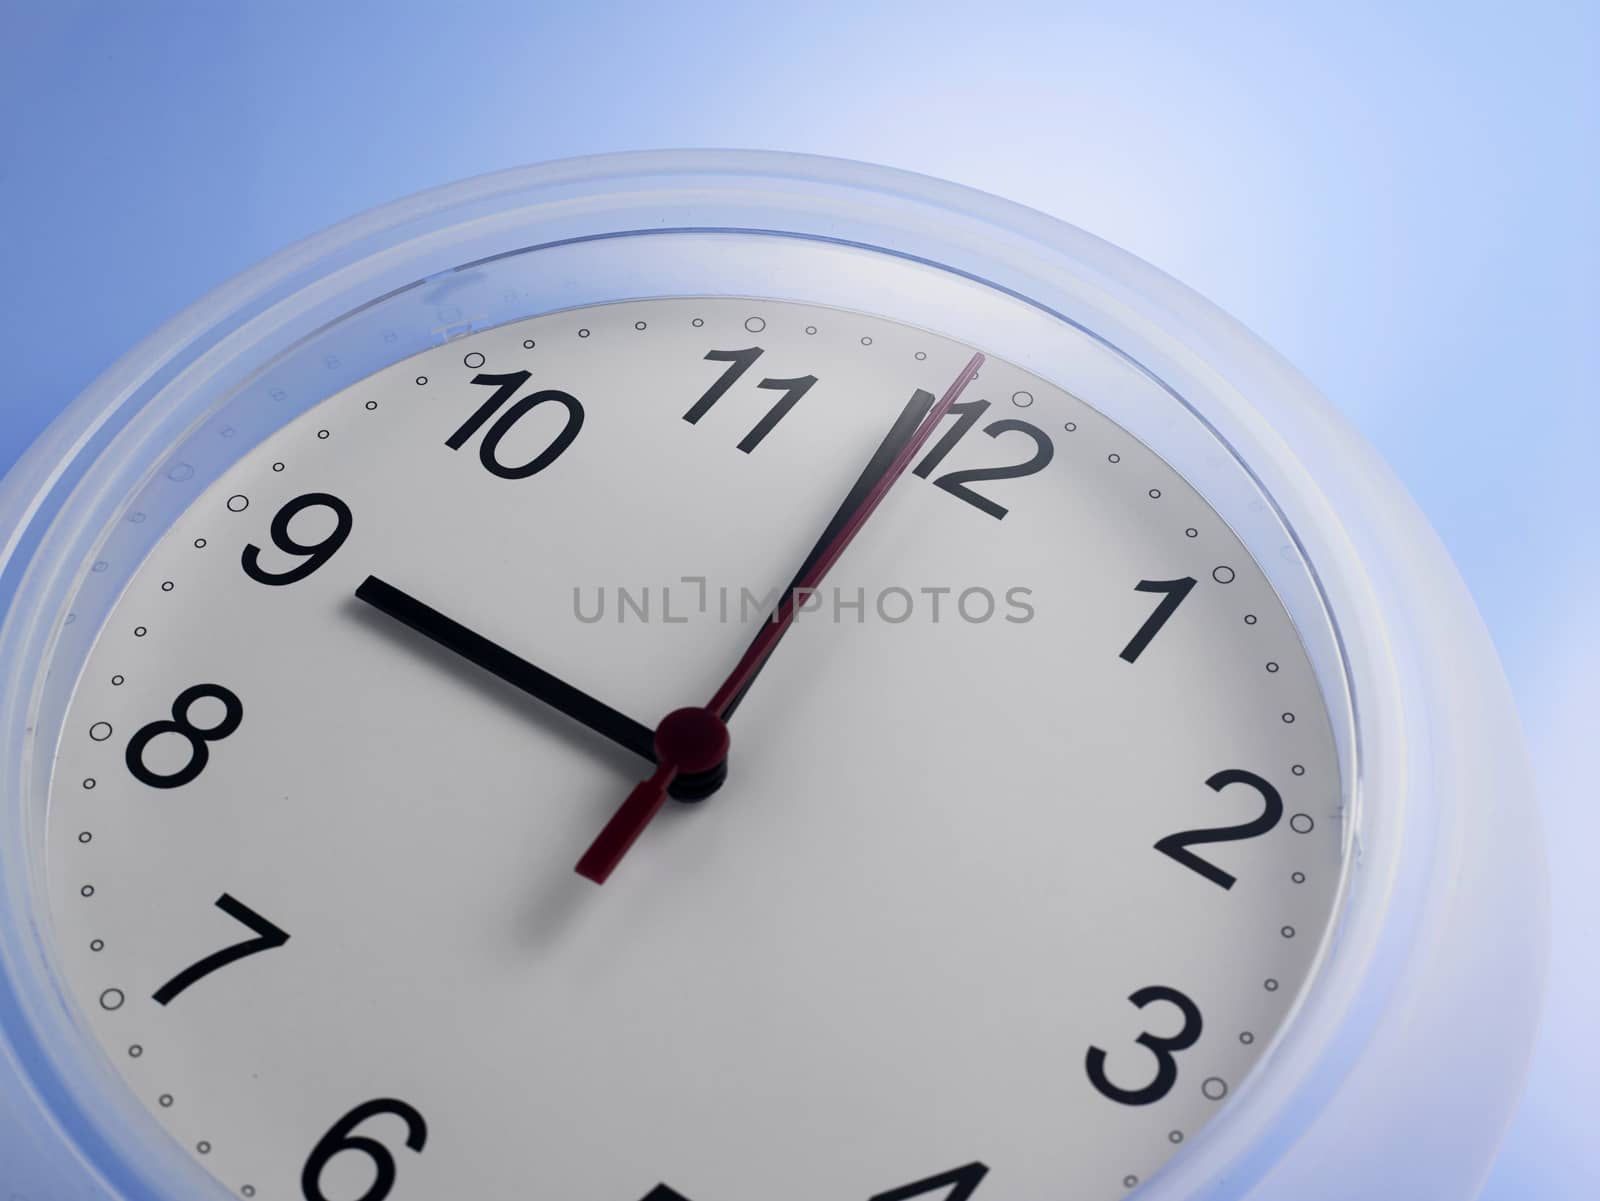 Close up of an analog clock at 9 o'clock

